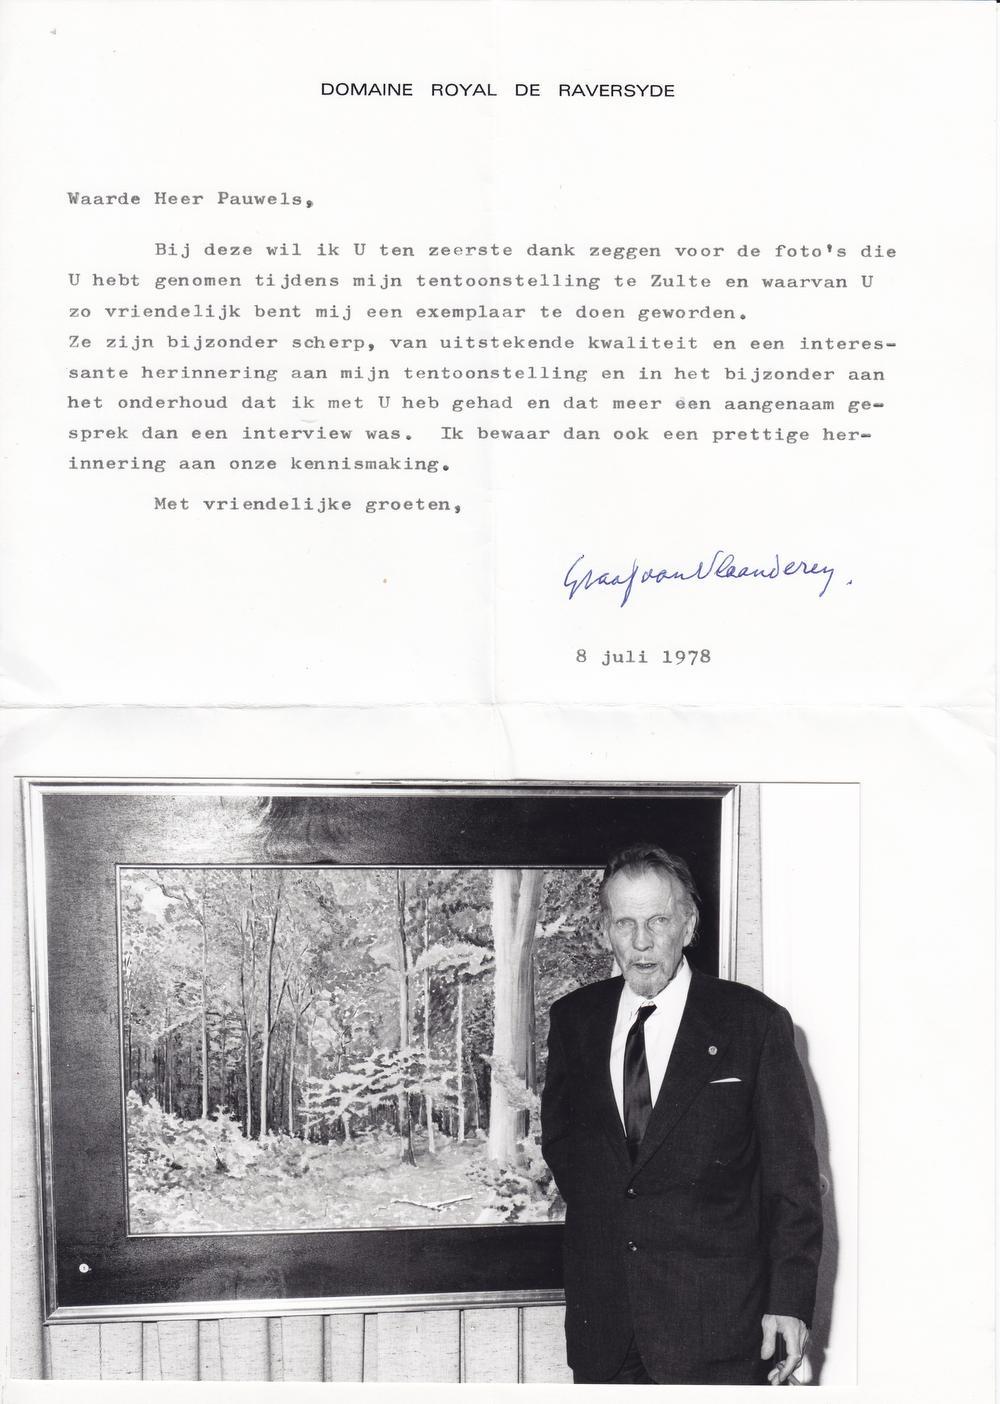 De foto van Prins Karel met zijn schilderij van Het Zoniënwoud en de bewuste brief die hij ontving van de Prins.